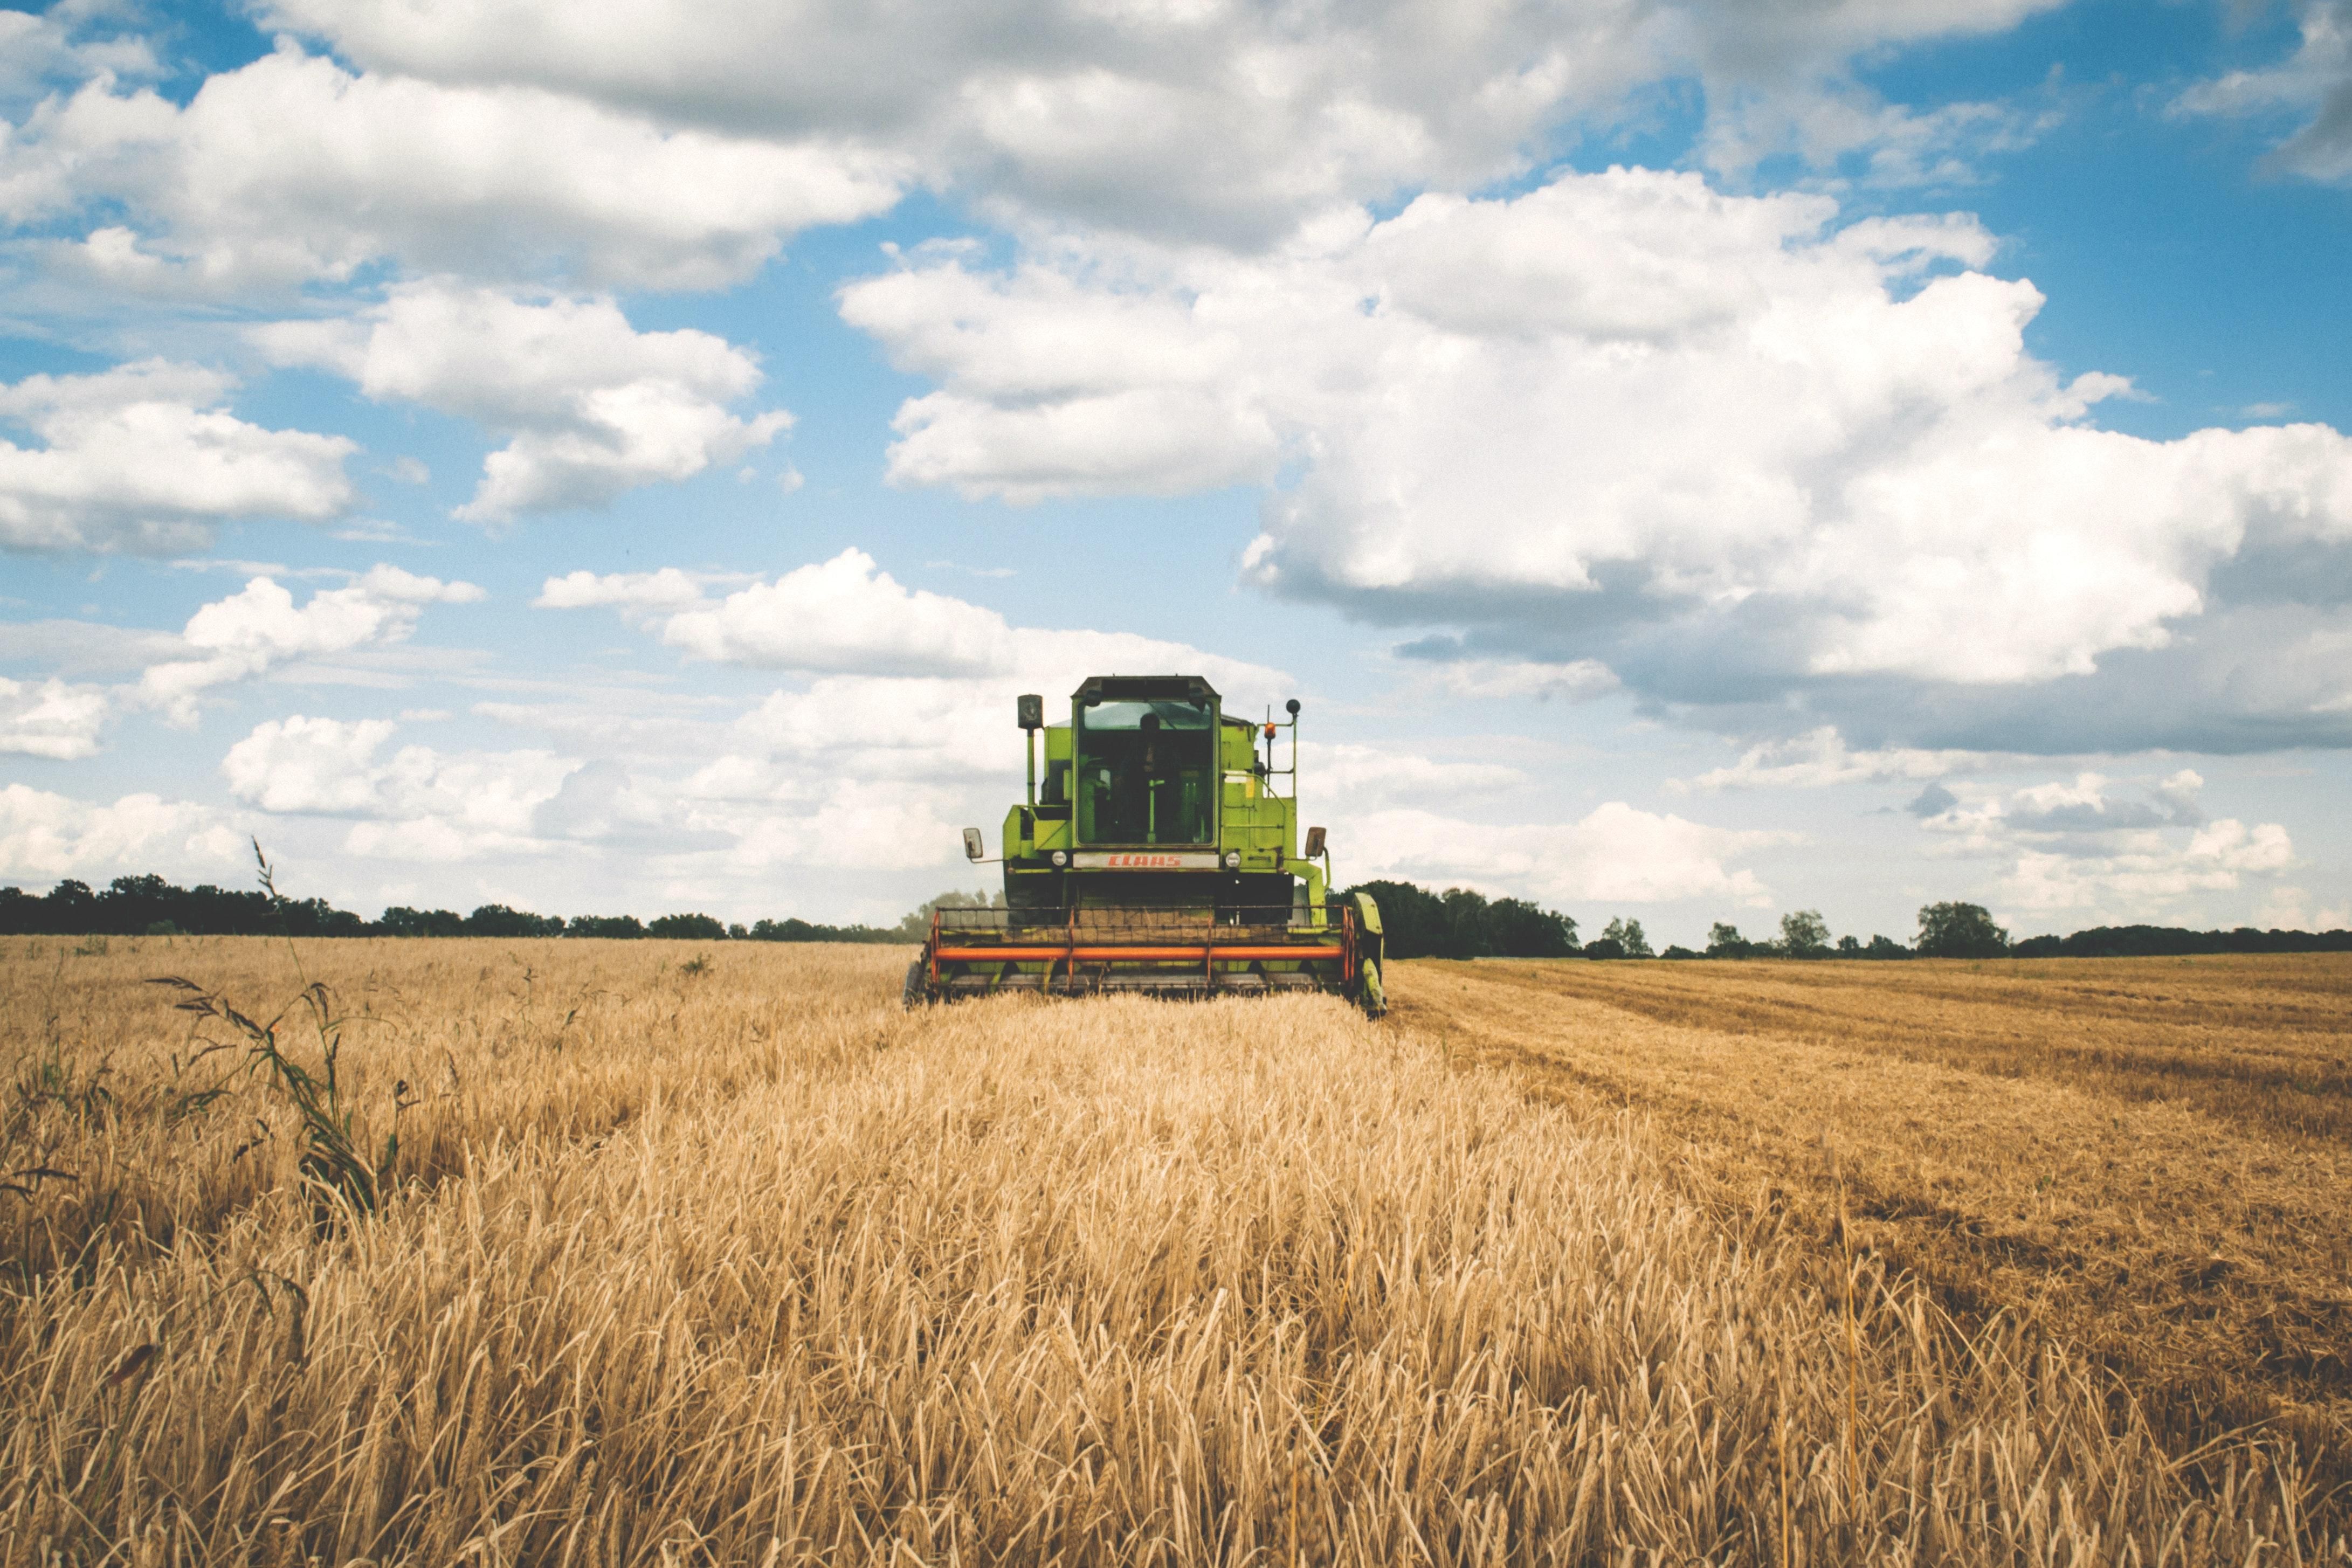 Рекордный урожай принесет Украине 0,8% ВВП, – Нацбанк - новости НБУ - Экономика